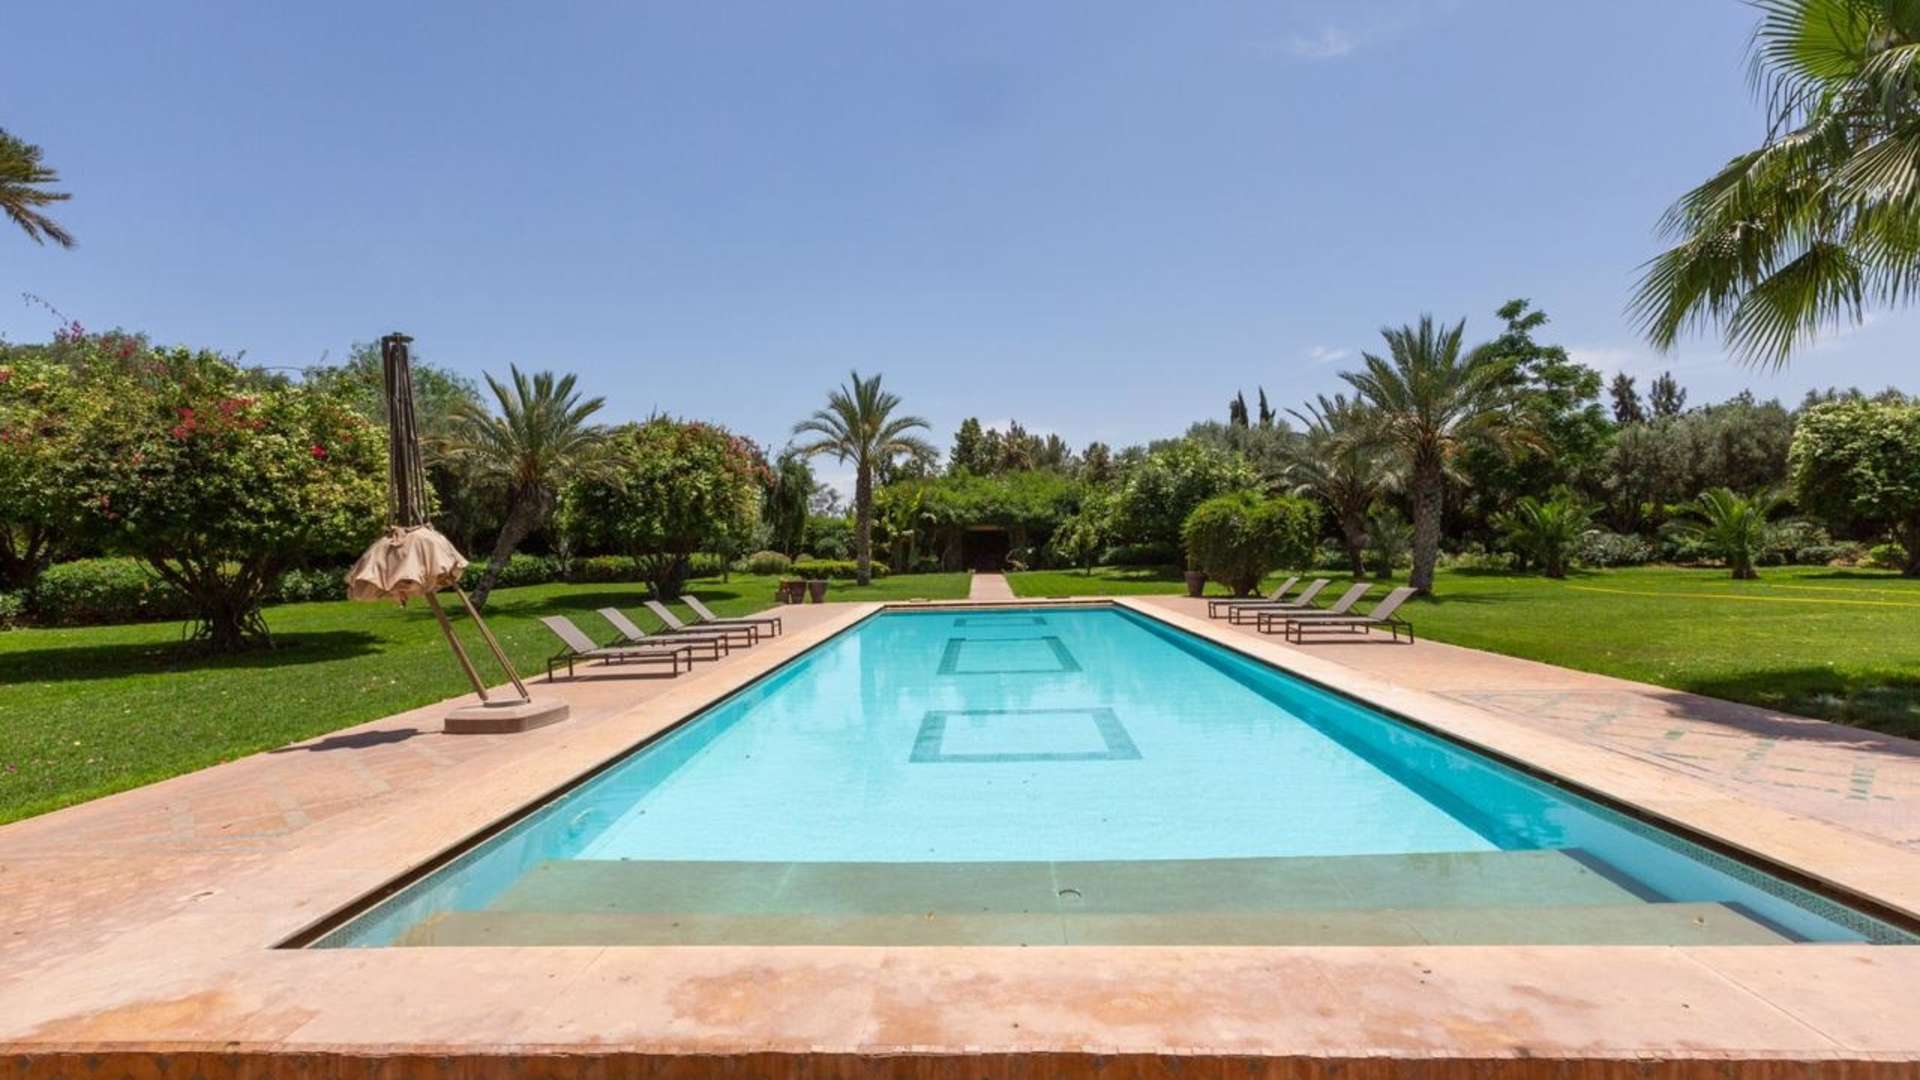 Vente,Villa,Propriété privée de 9 ch sur un parc de 6000 m2 à proximité des golfs à Marrakech,Marrakech,Palmeraie